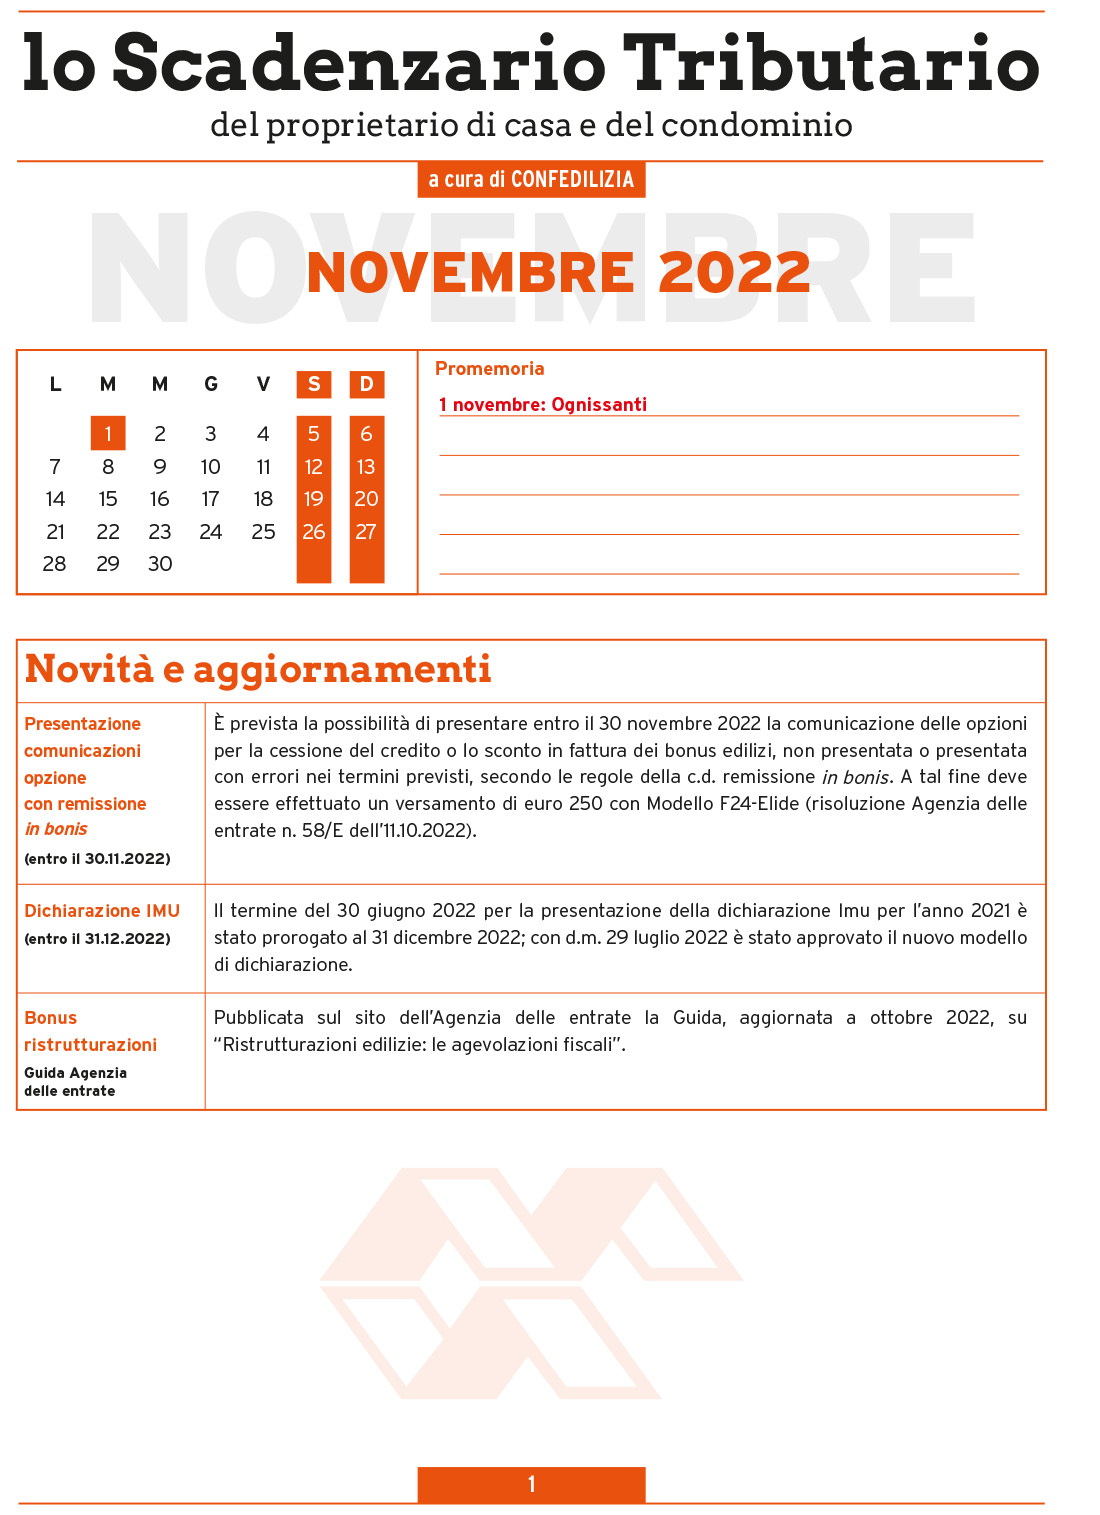 SCADENZARIO TRIBUTARIO NOVEMBRE 2022 (9 pagg.)-1